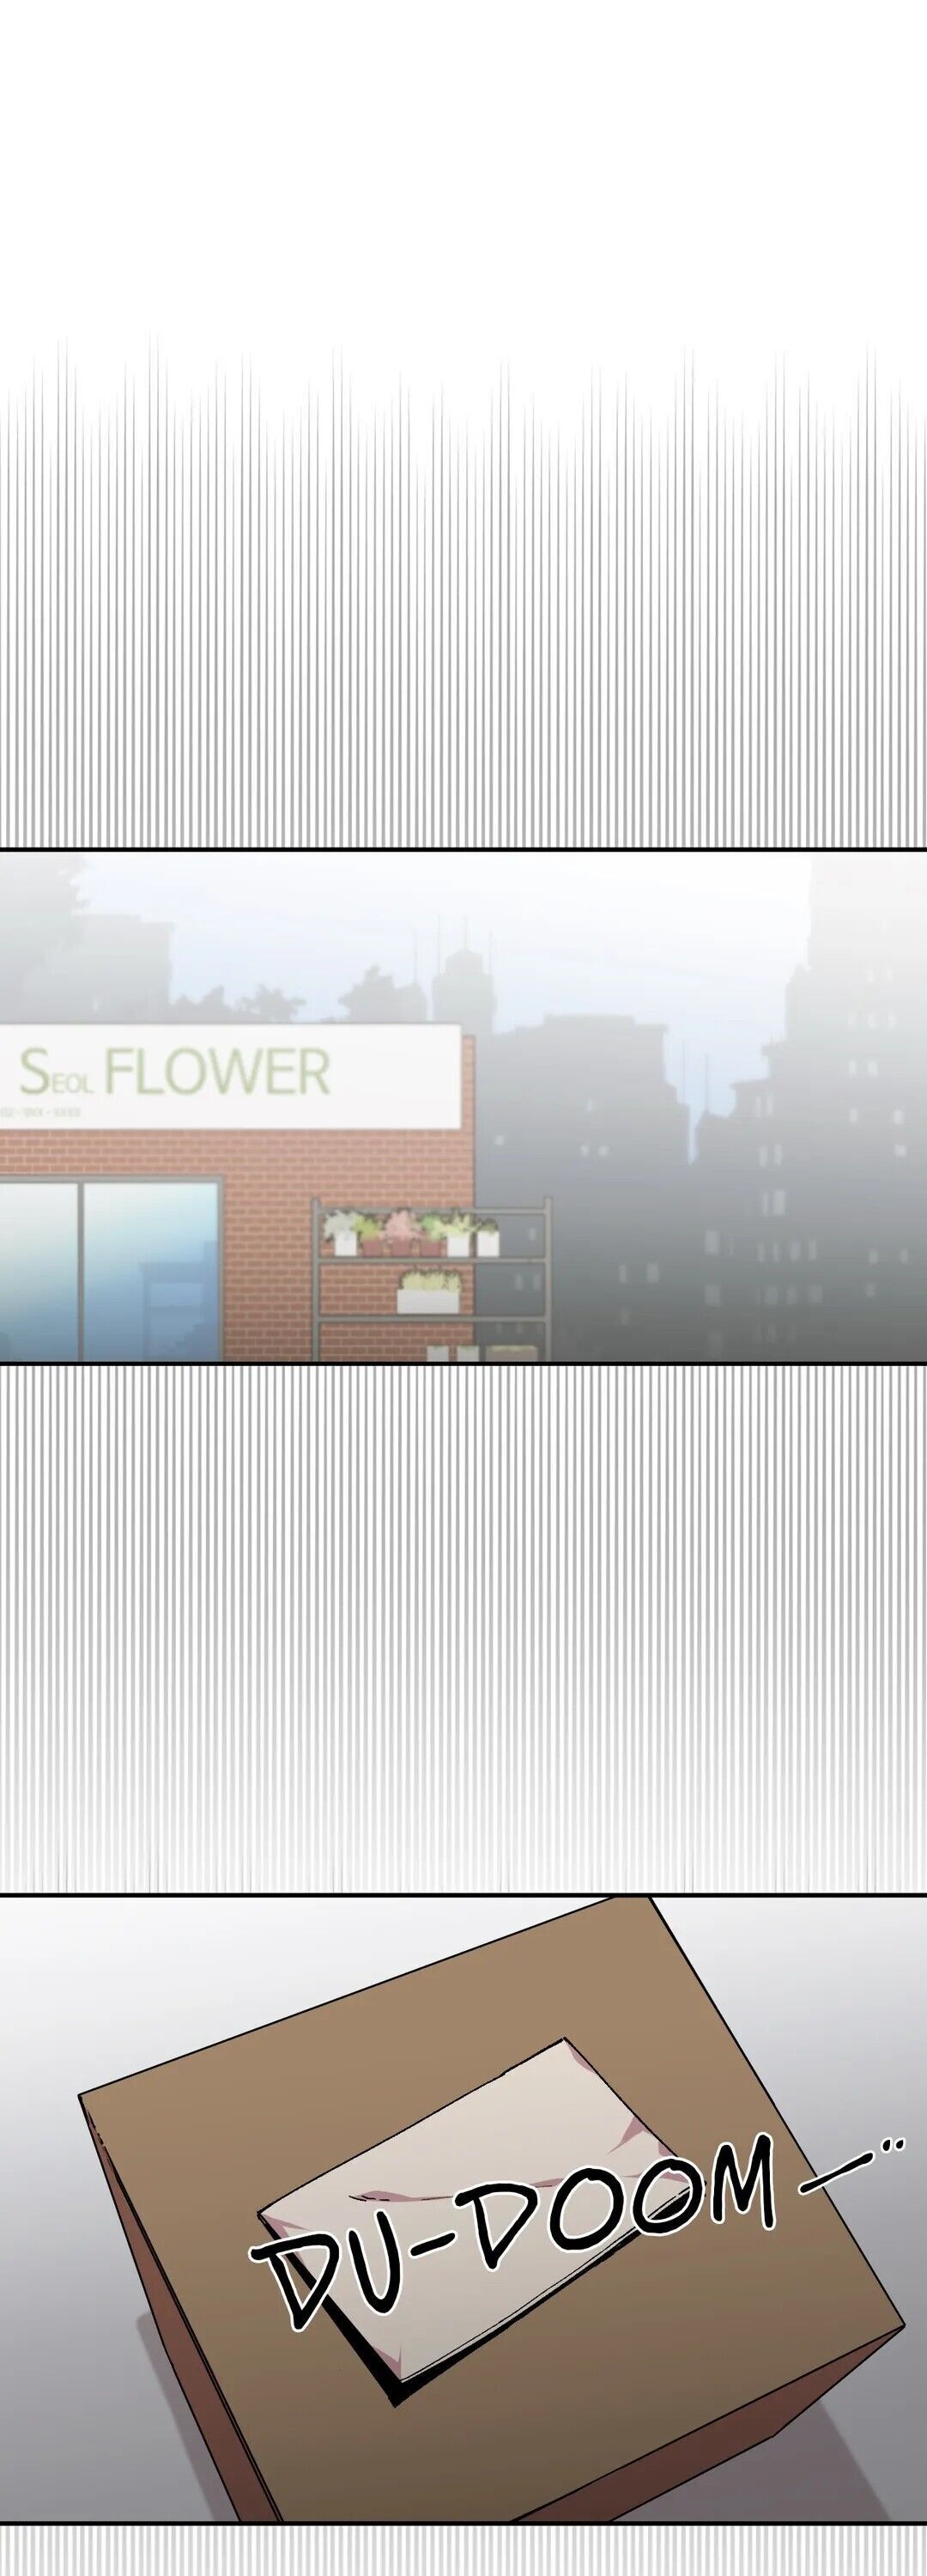 The image S Flower - Chapter 56 - smBWh1p1gKGBOG4 - ManhwaManga.io